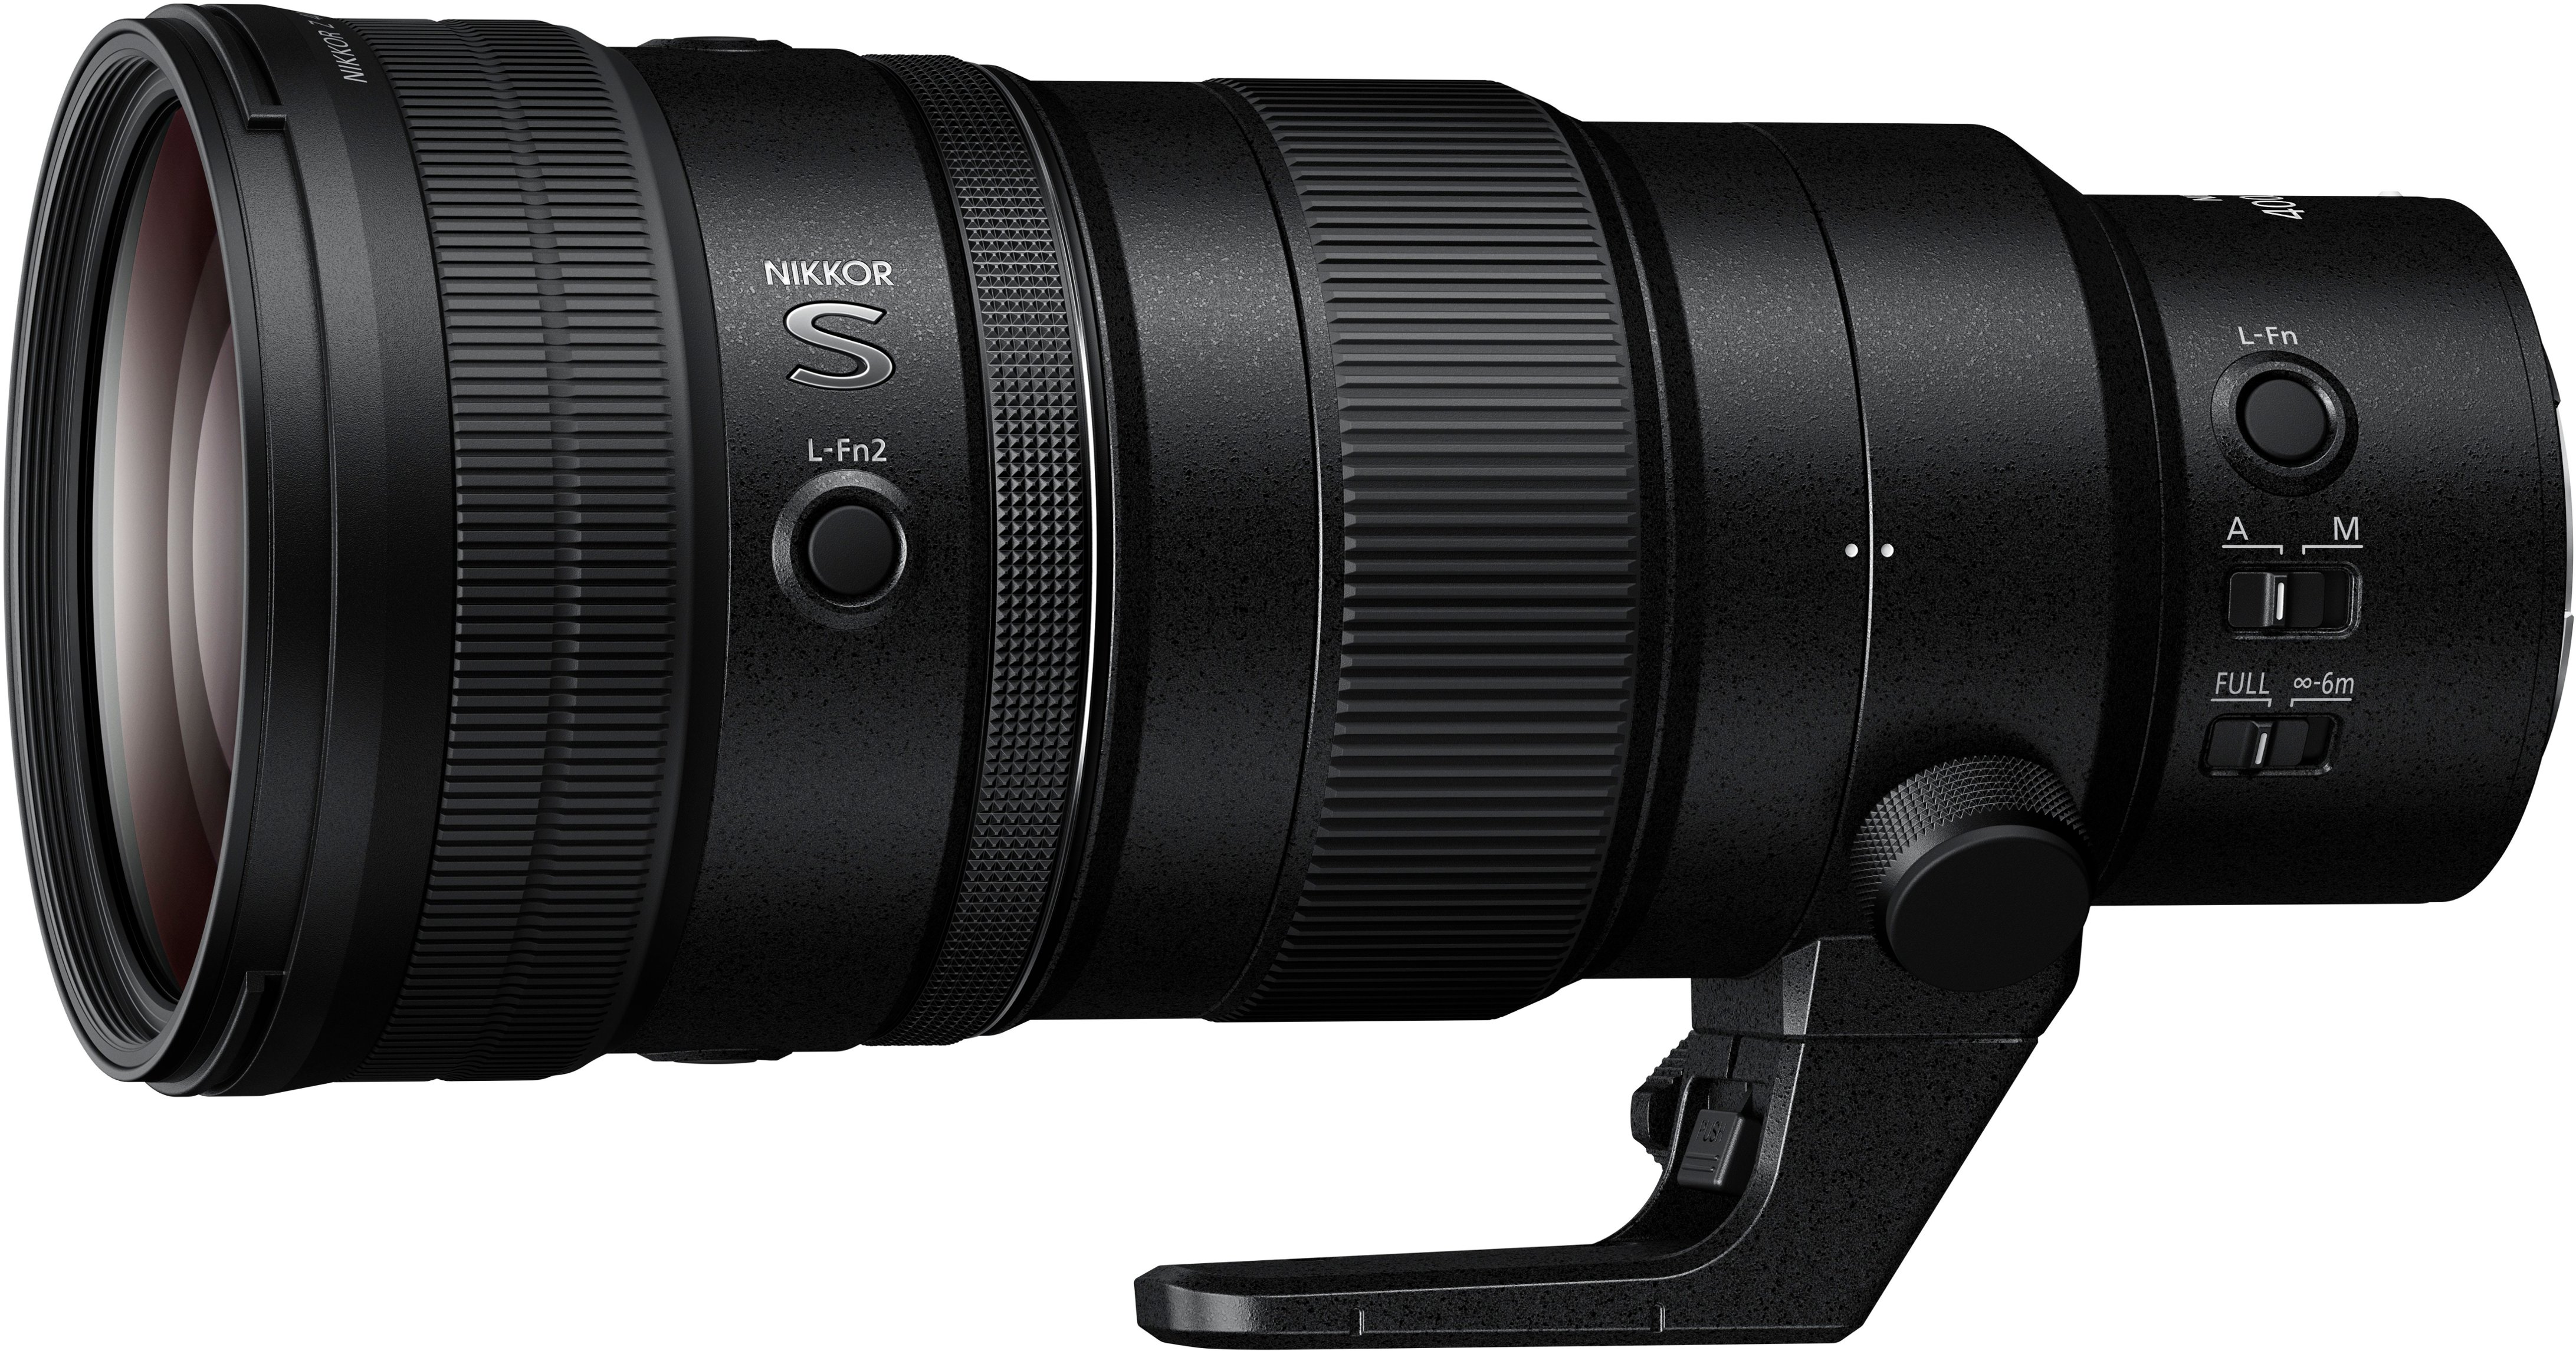 Angle View: NIKKOR Z 400mm f/4.5 VR S Super-Telephoto Prime Lens for Nikon Z Mount Cameras - Black